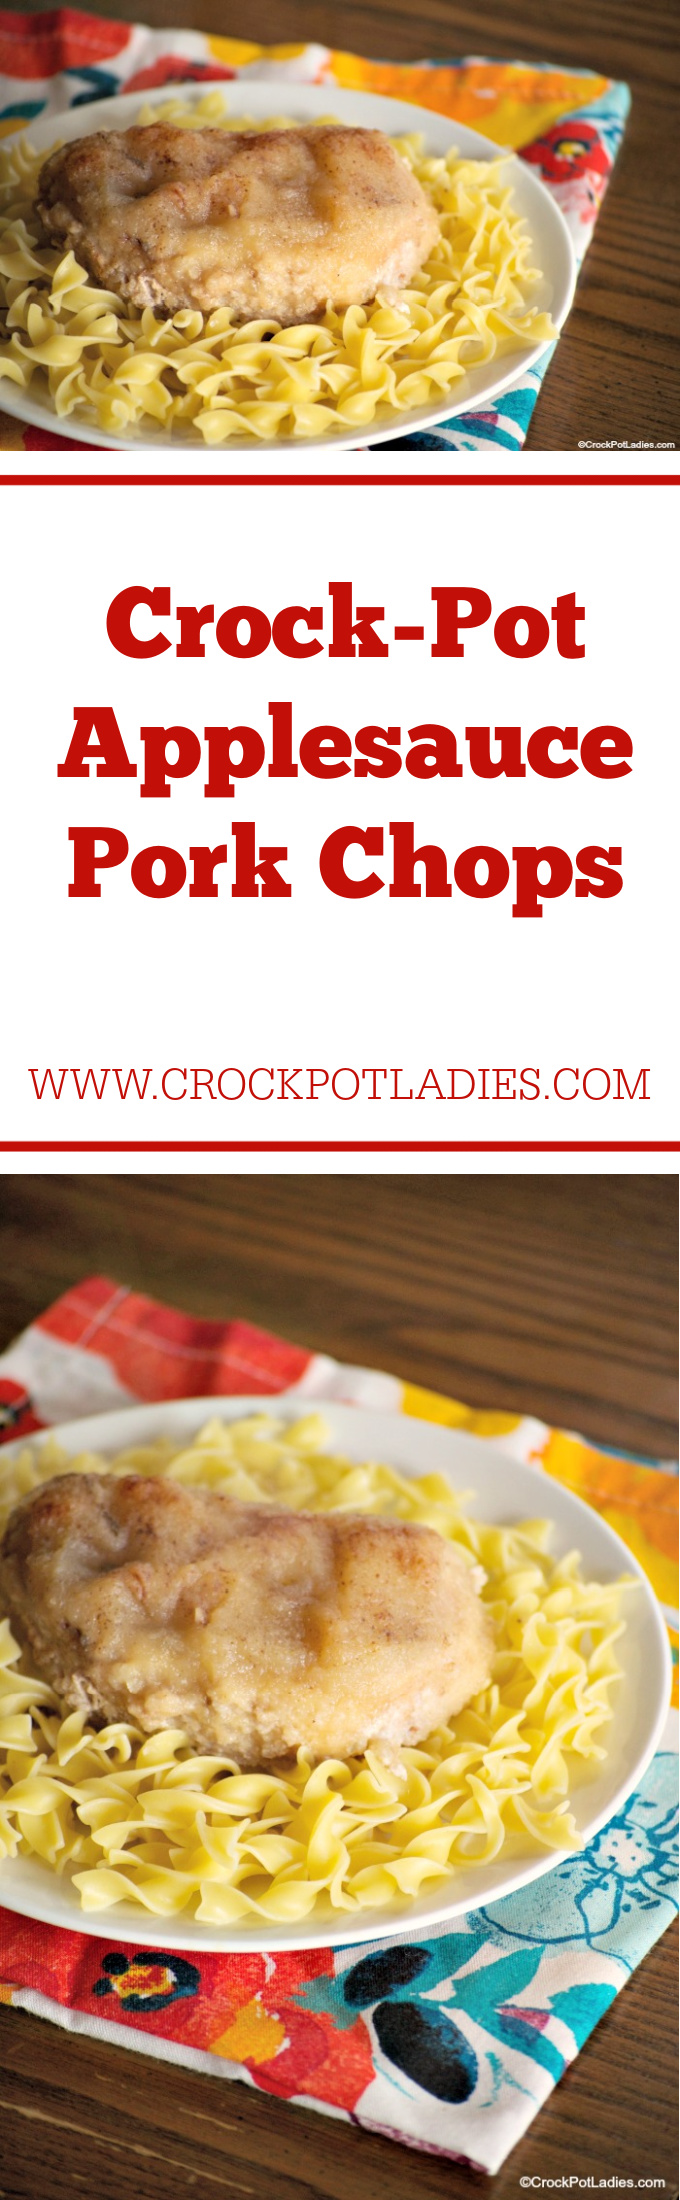 Crock-Pot Applesauce Pork Chops